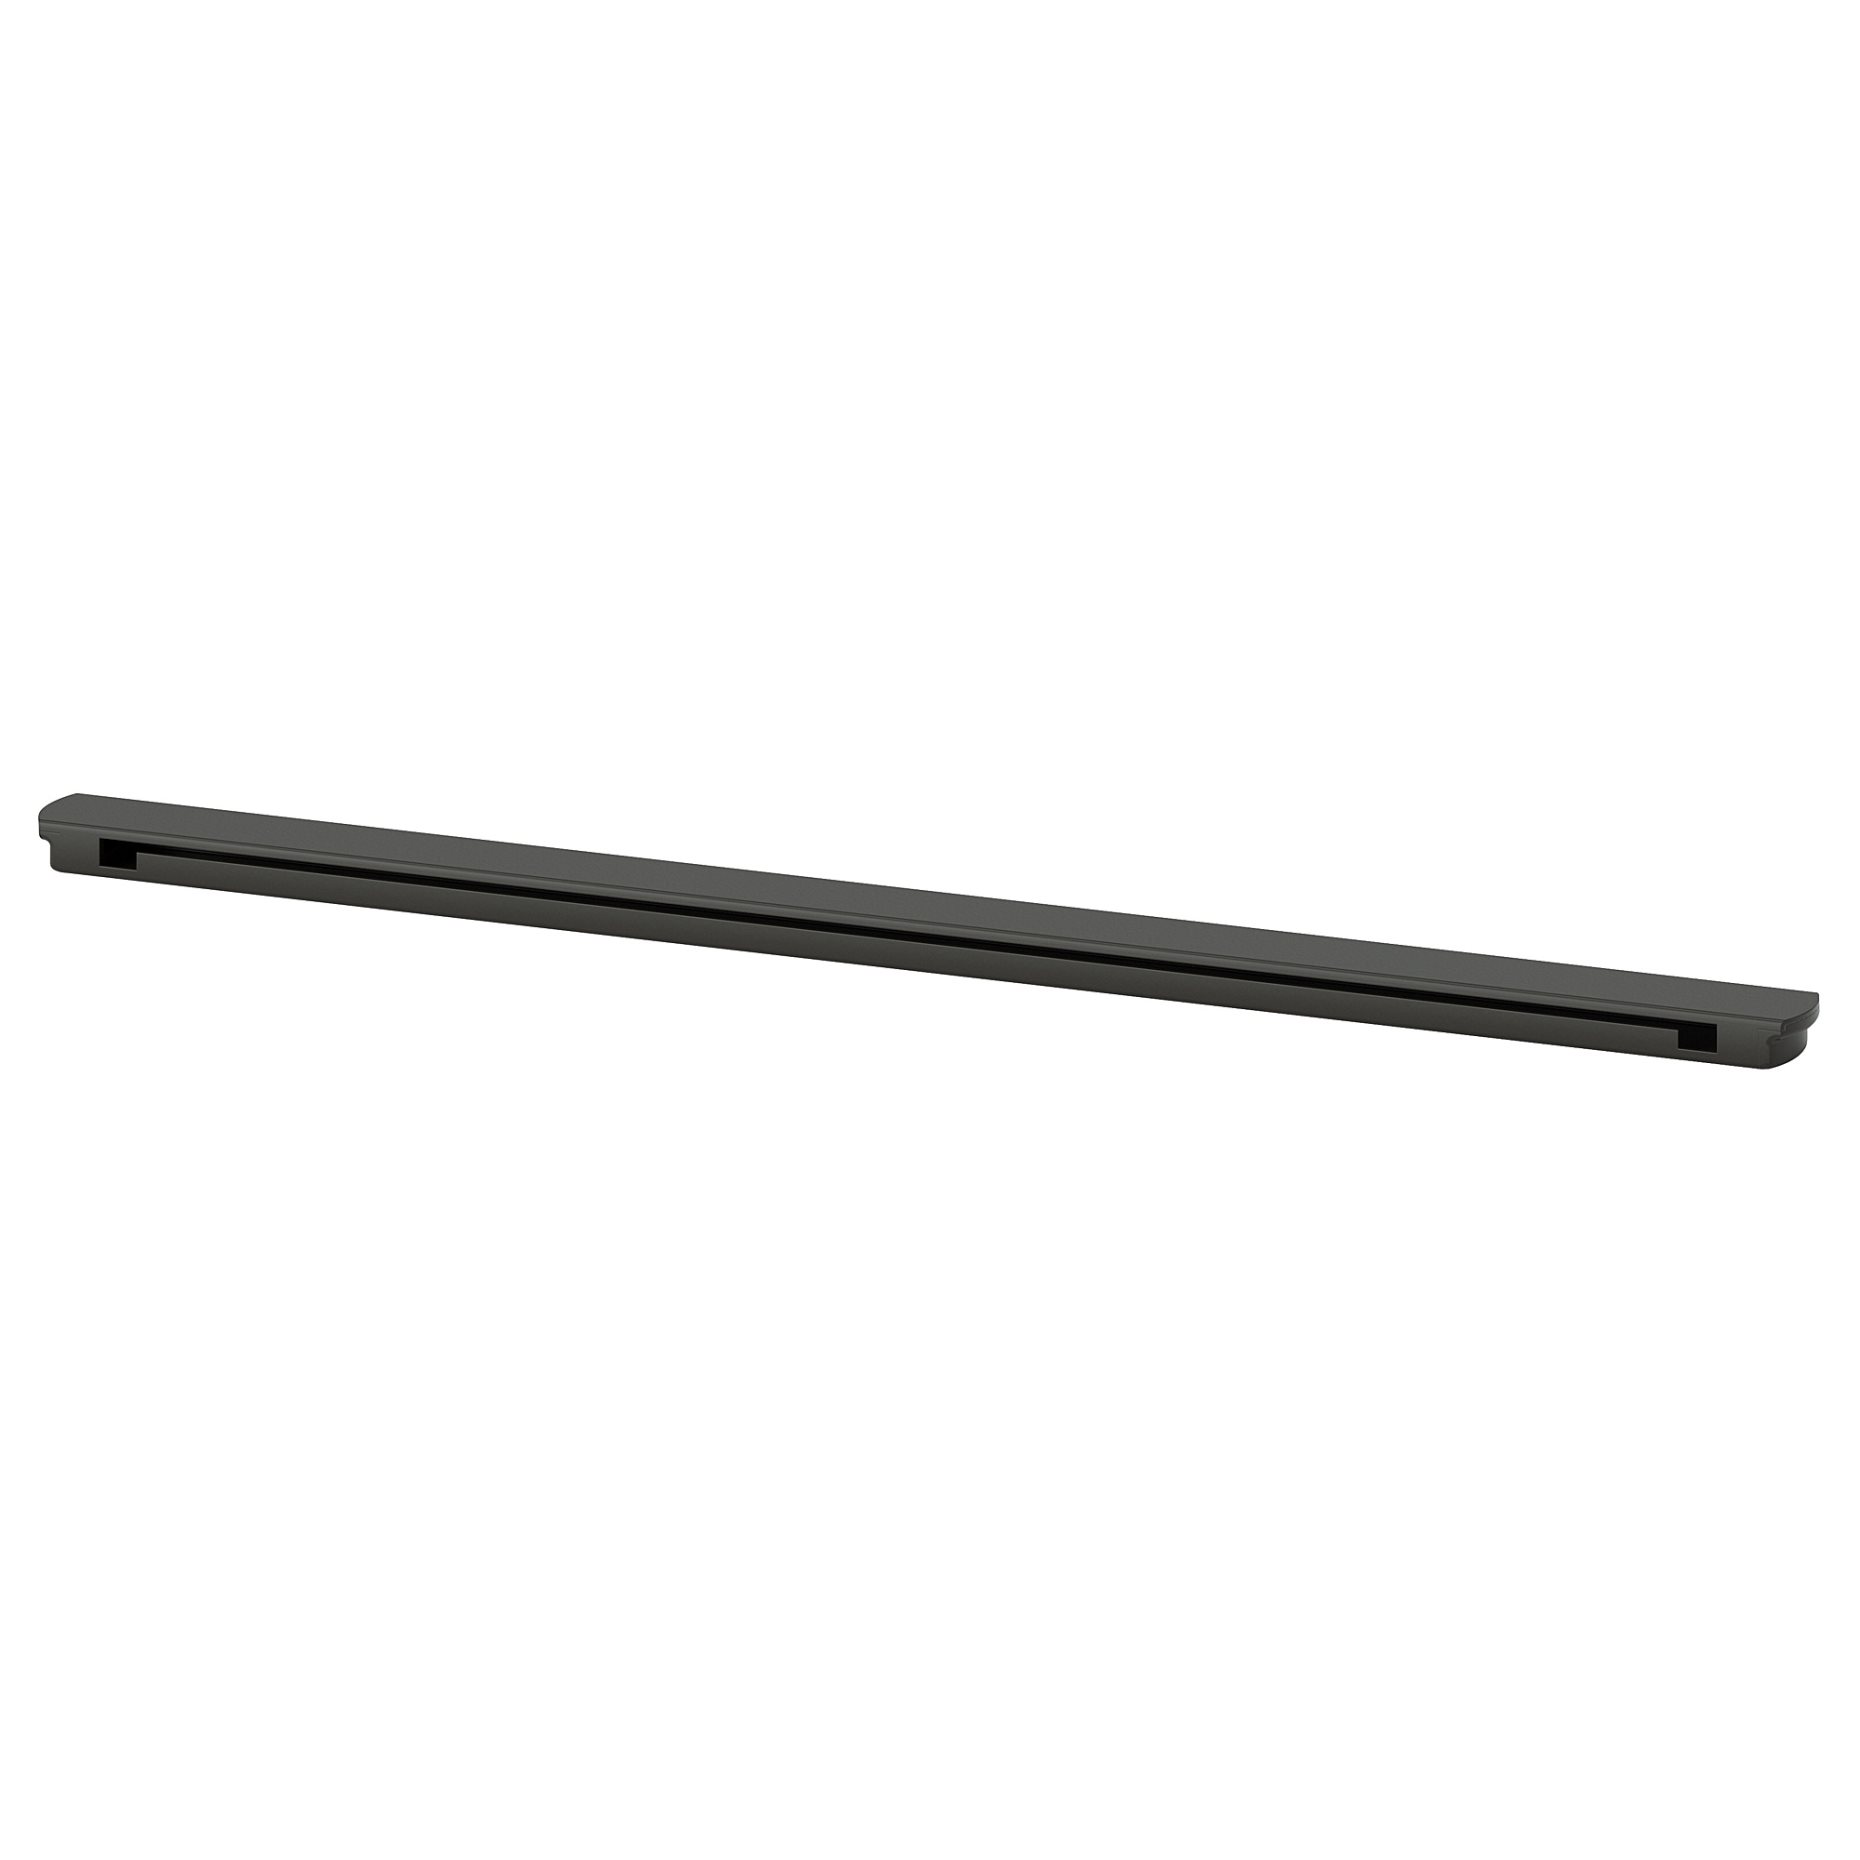 ENHET, rail for hooks, 37 cm, 704.657.36